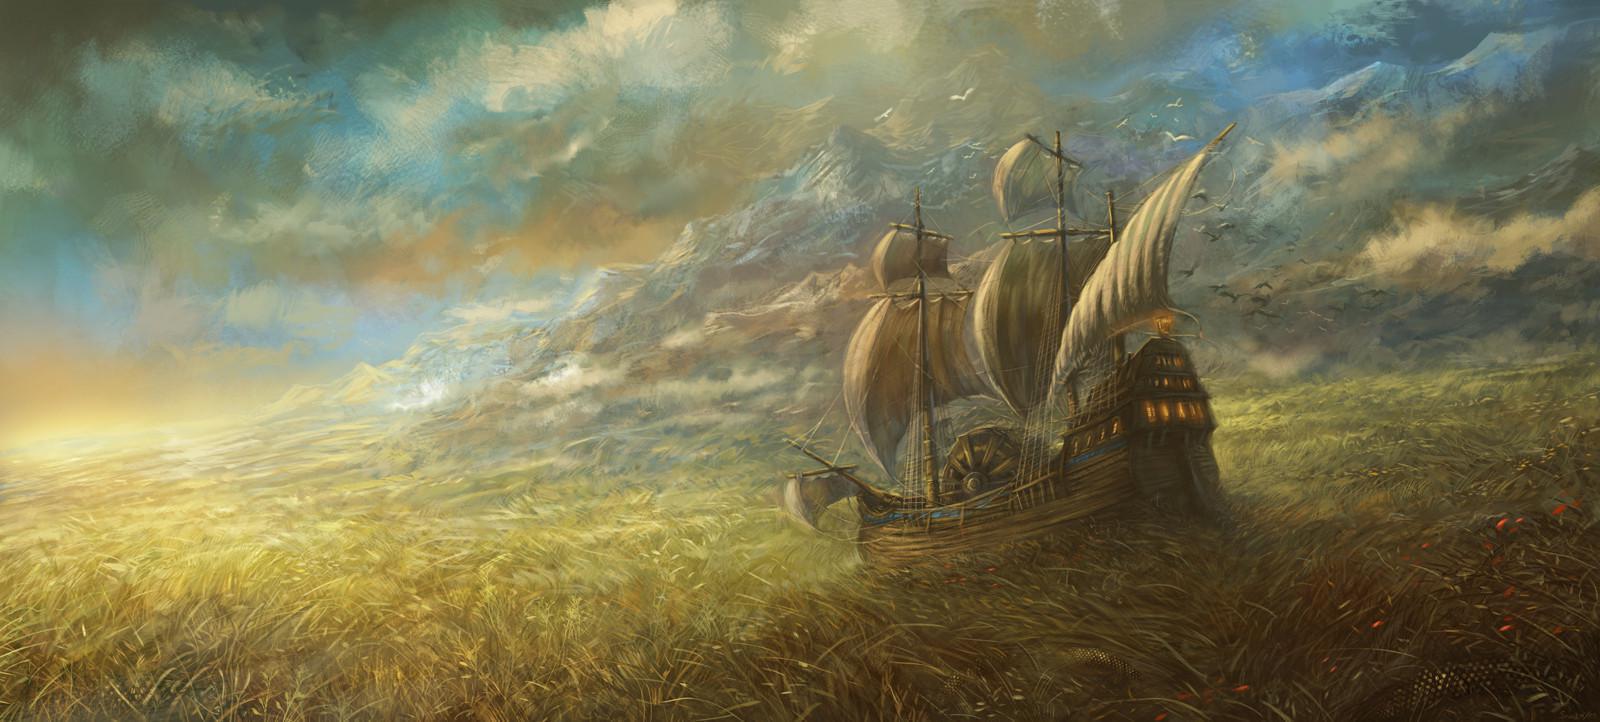 Корабль, идущий через Травяное море с паломниками на борту.